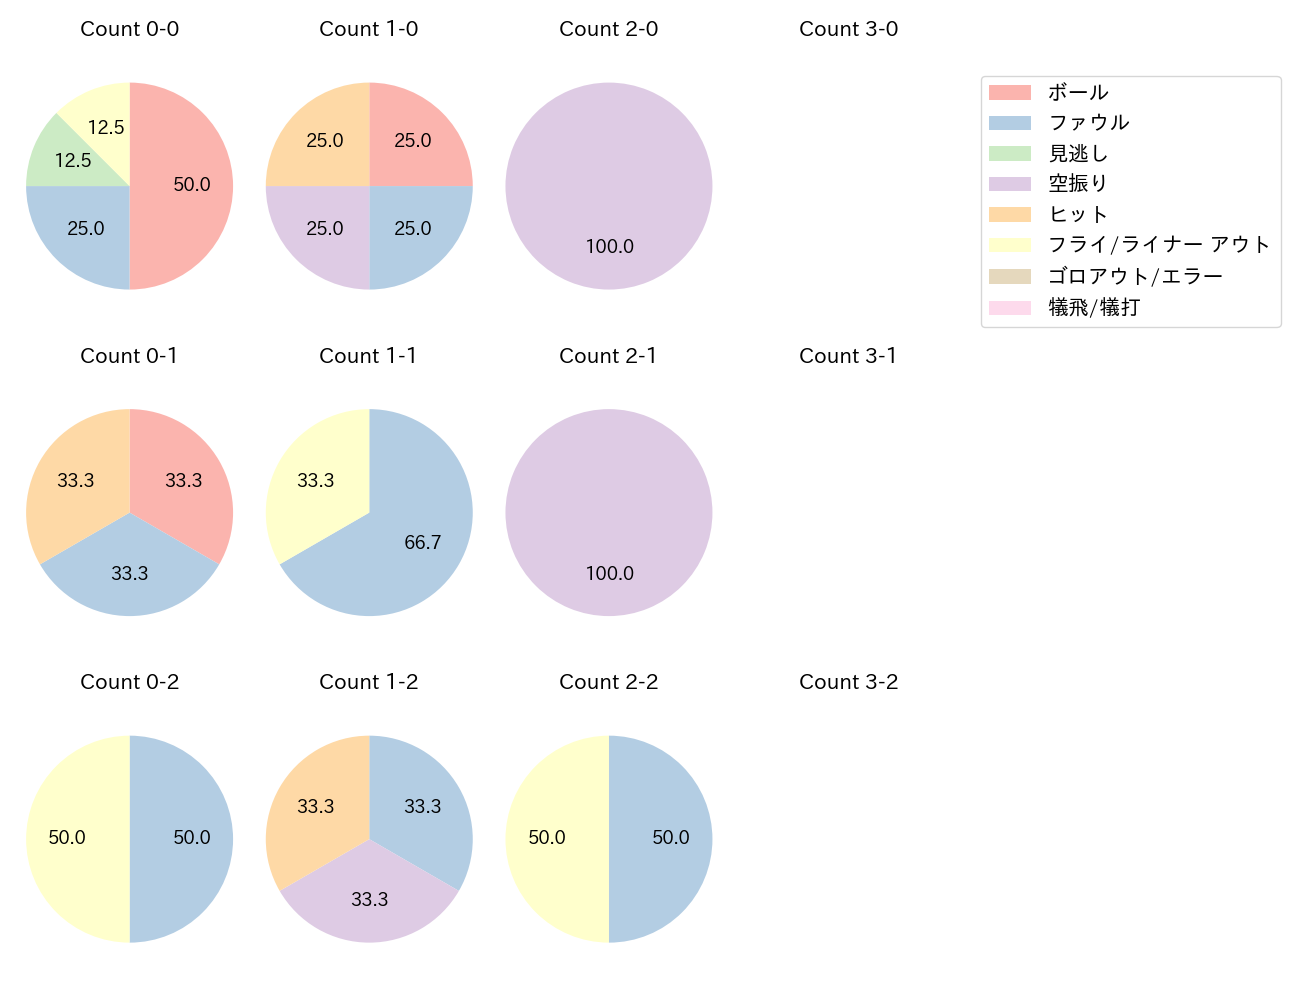 大田 泰示の球数分布(2023年10月)